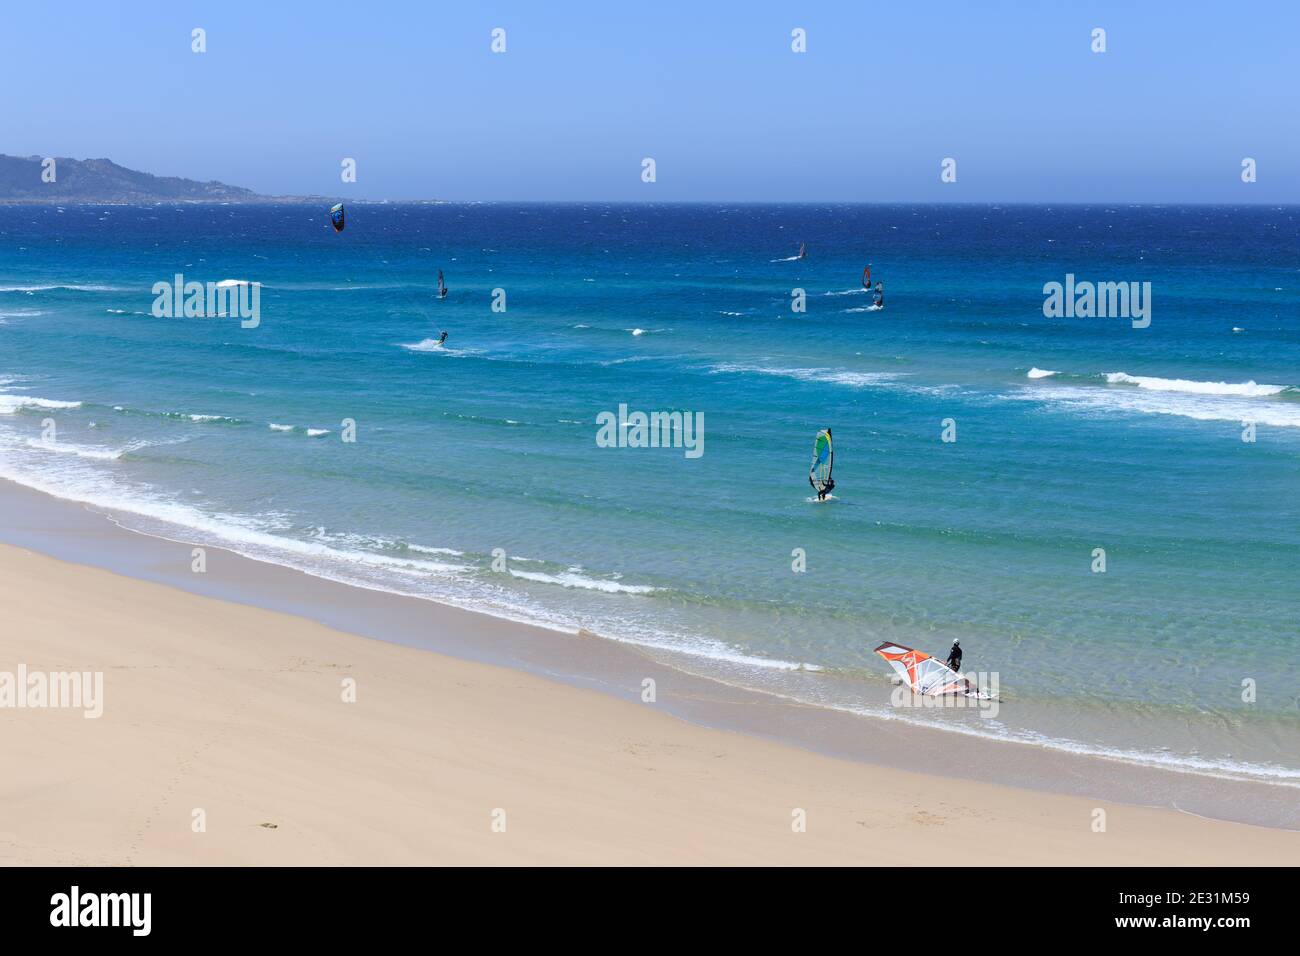 Spiaggia di Soesto (Praia de Soesto) con windsurf in acqua, la via faro da Laxe ad Alou, Galizia, la Coruña, Spagna Foto Stock